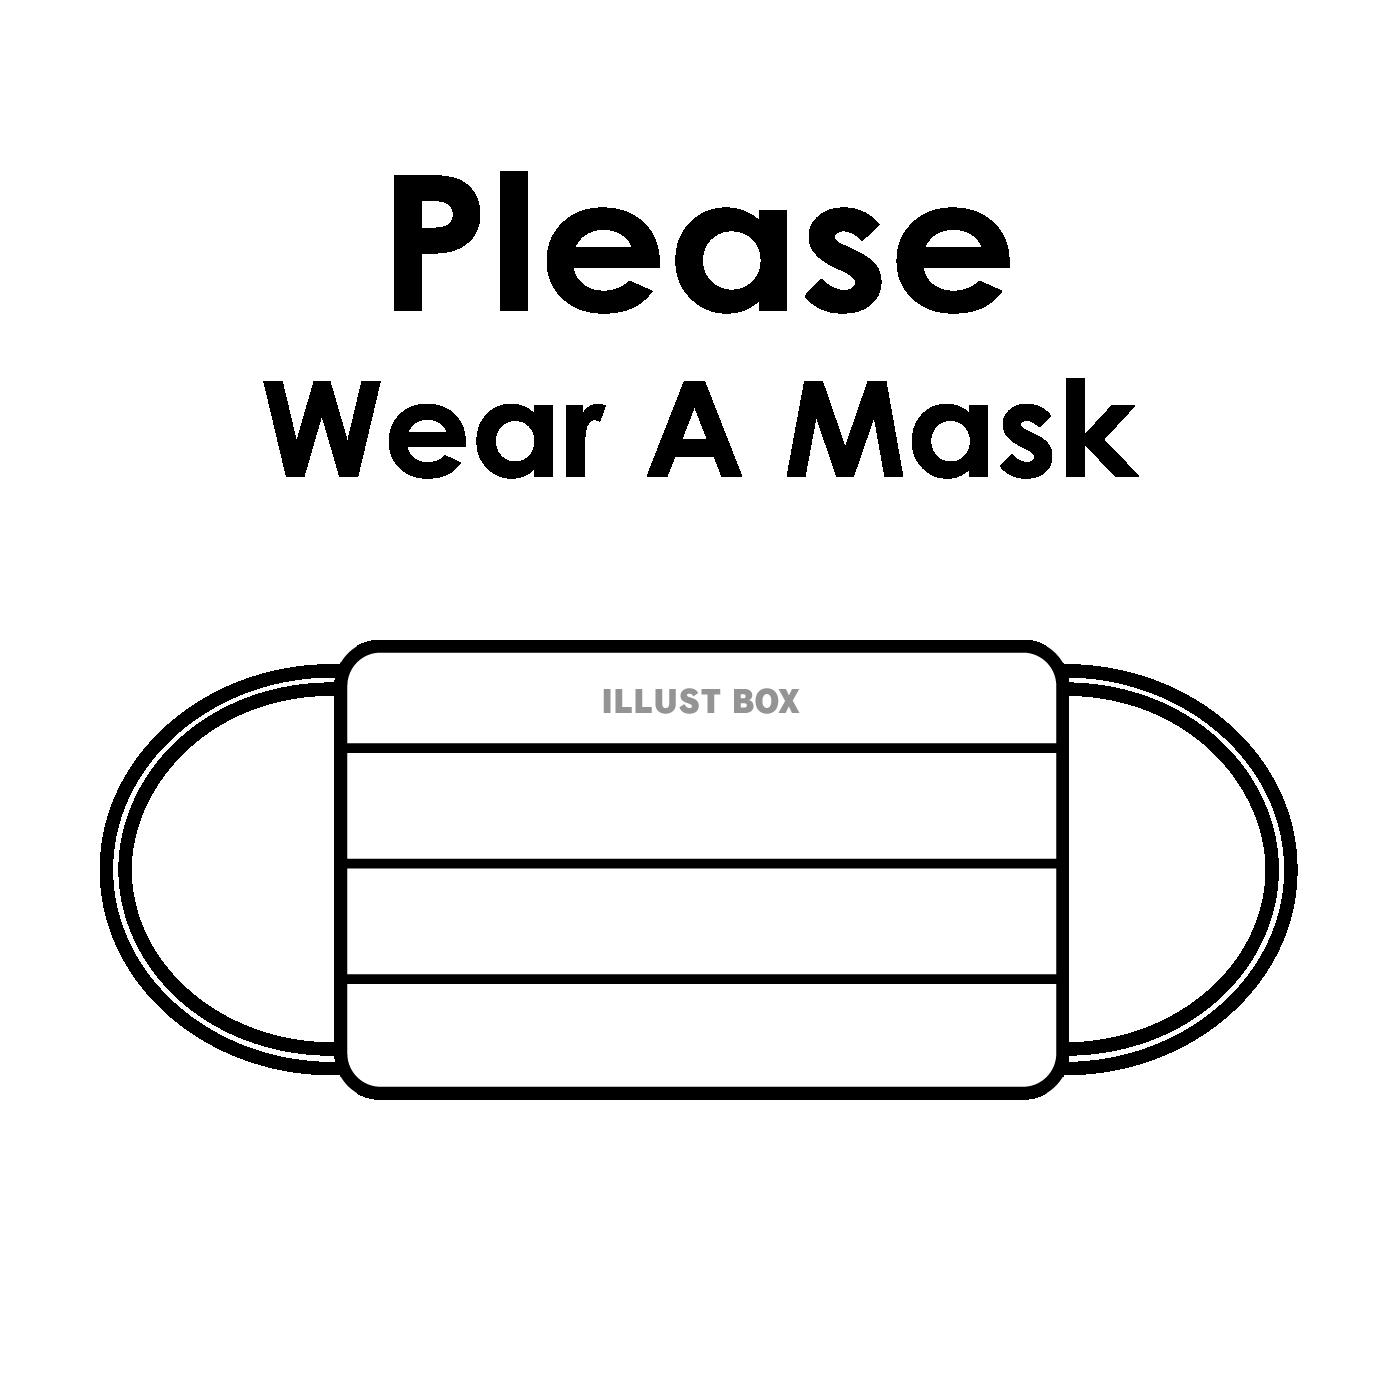 Please Wear A Mask